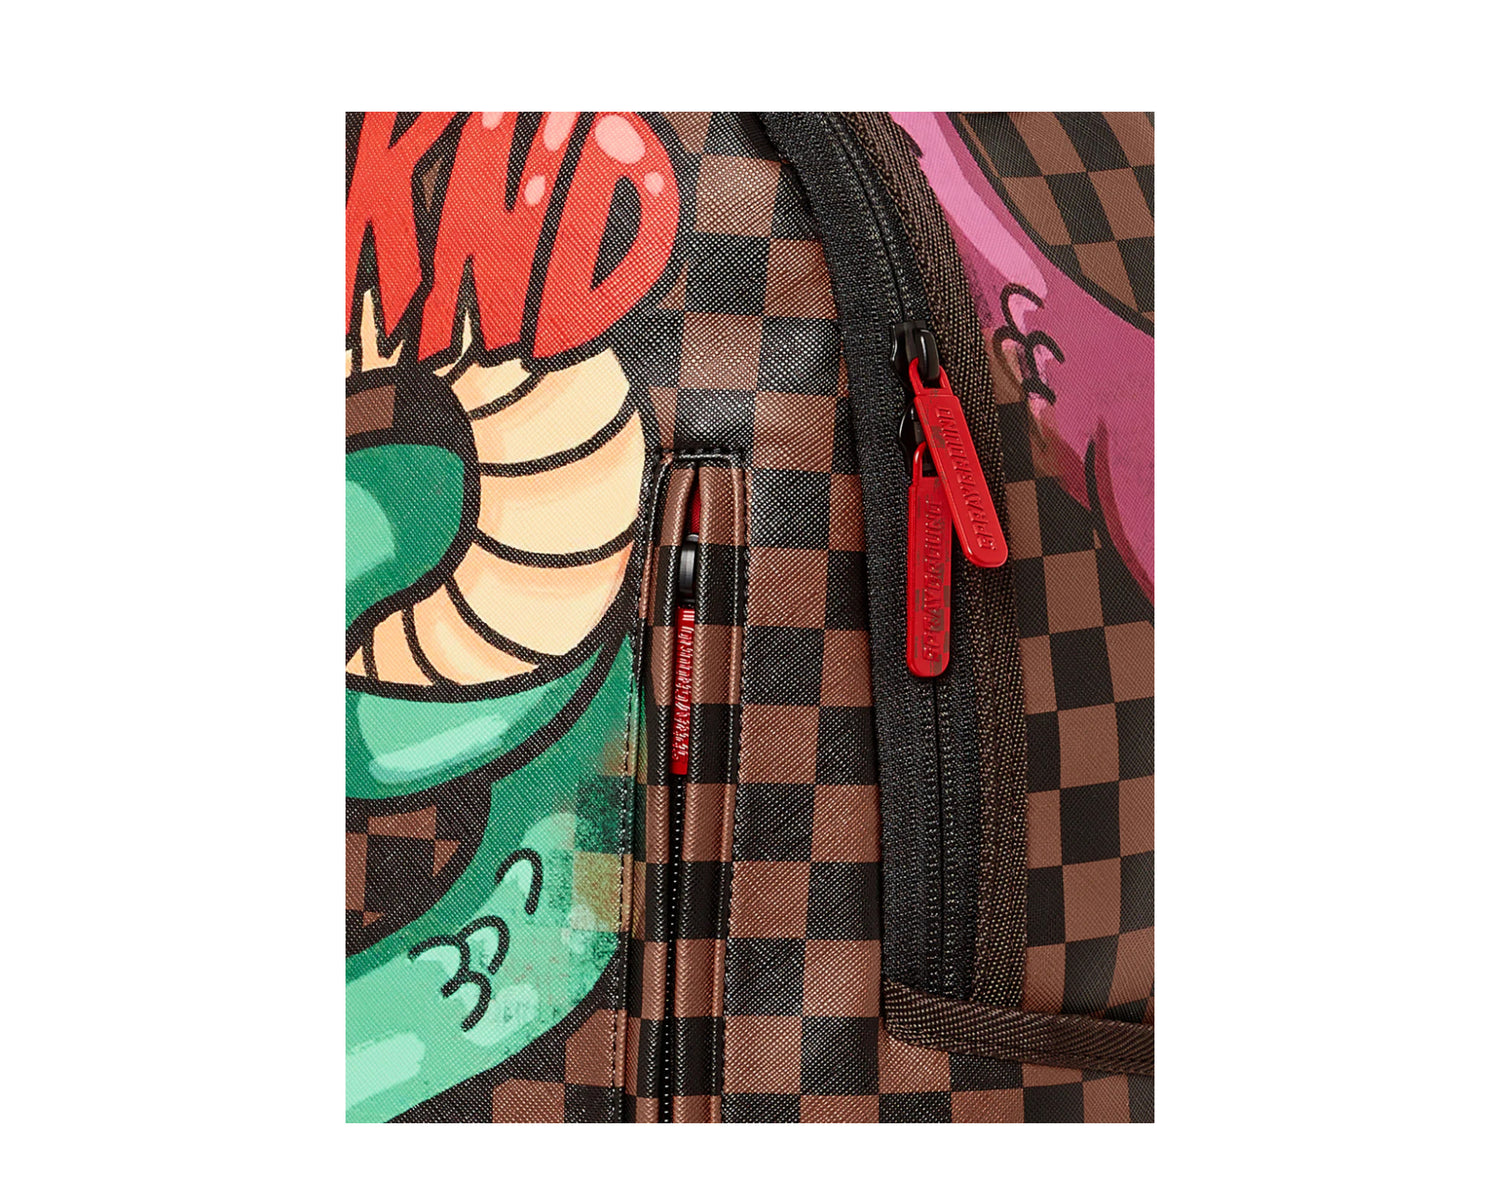 Sprayground Snake On The Bag Street Art Snake Sip Backpack